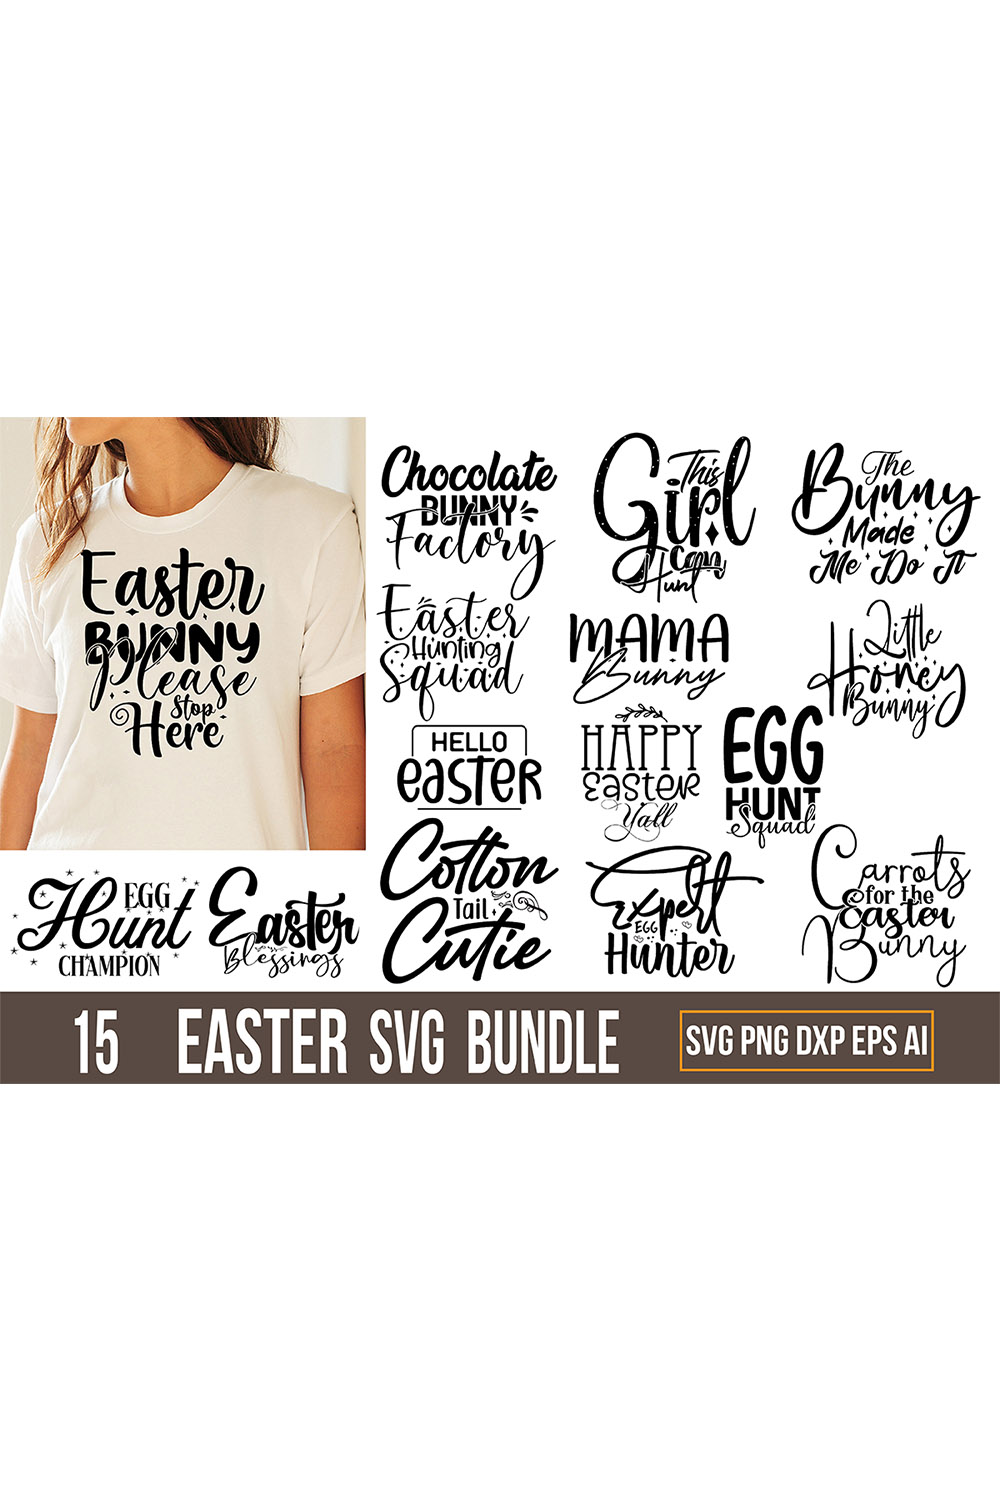 T-shirt Easter Typography Design SVG pinterest image.